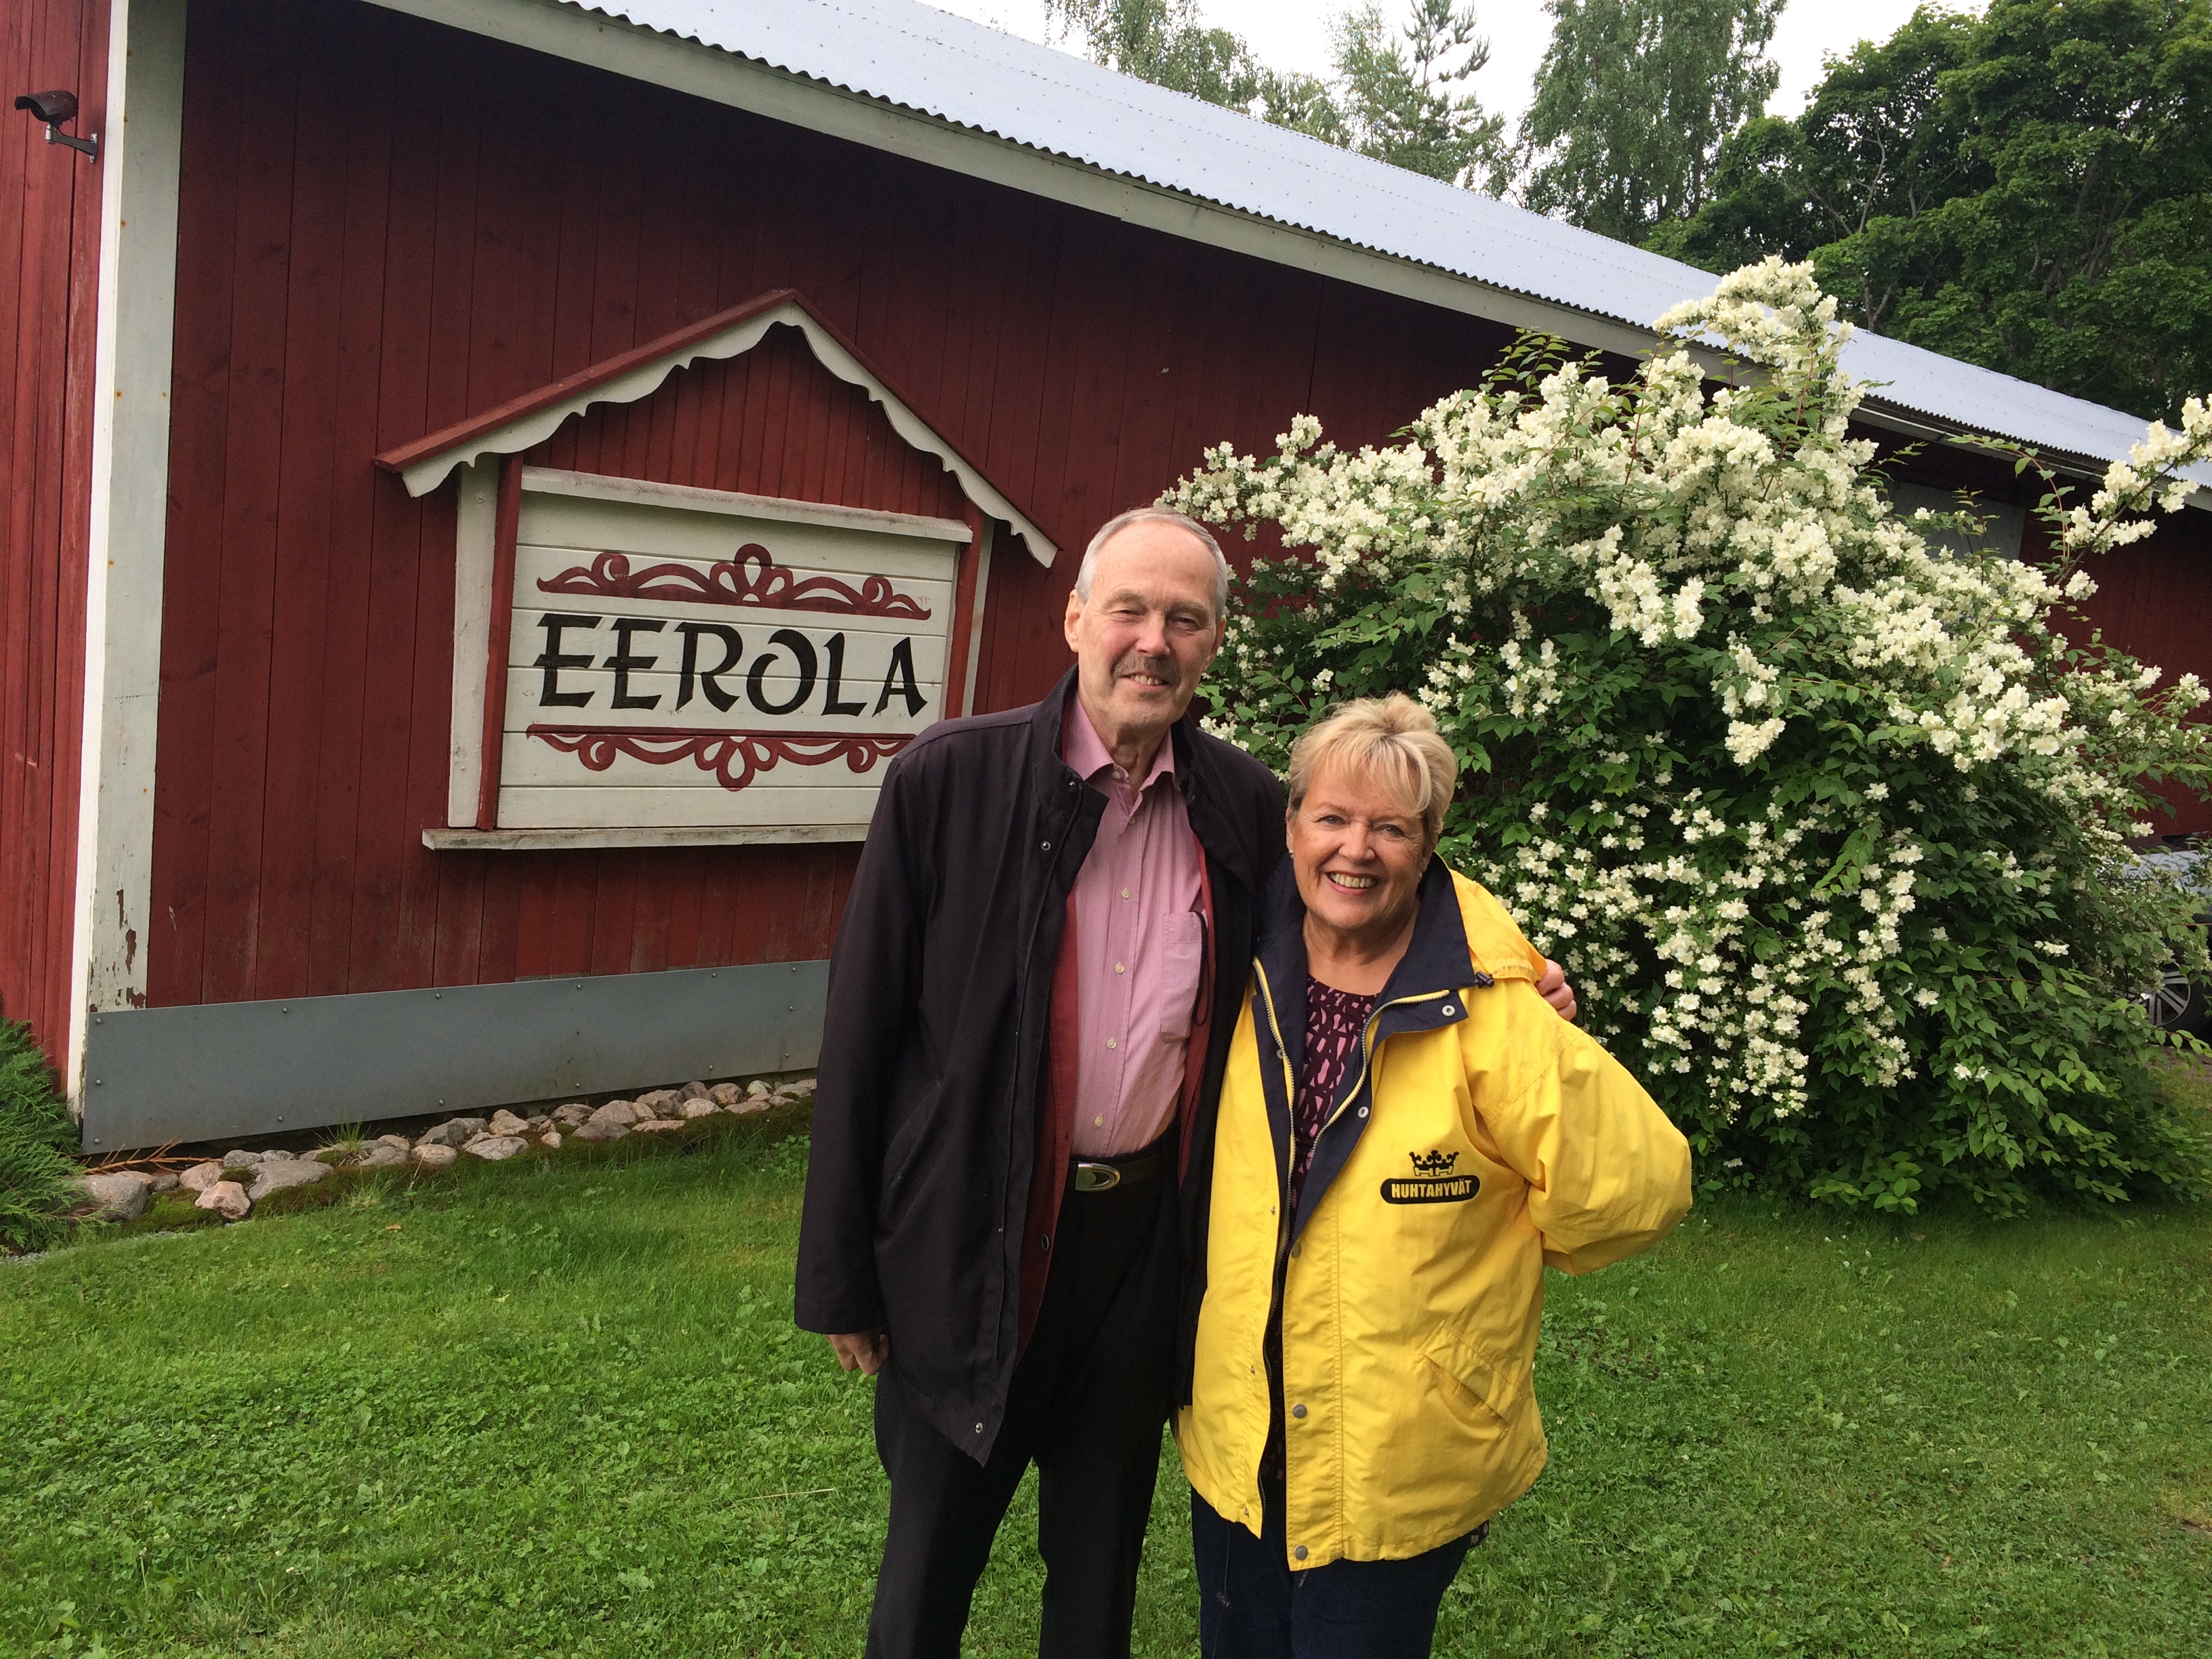 Suurlähettiläs Kauko Jämsen viettää kesäisin eläkepäiviään historiallisella Eerolan tilalla Orivedellä Hämeessä. Mummon keltainen sadetakki oli paikallaan tänä kesänä!